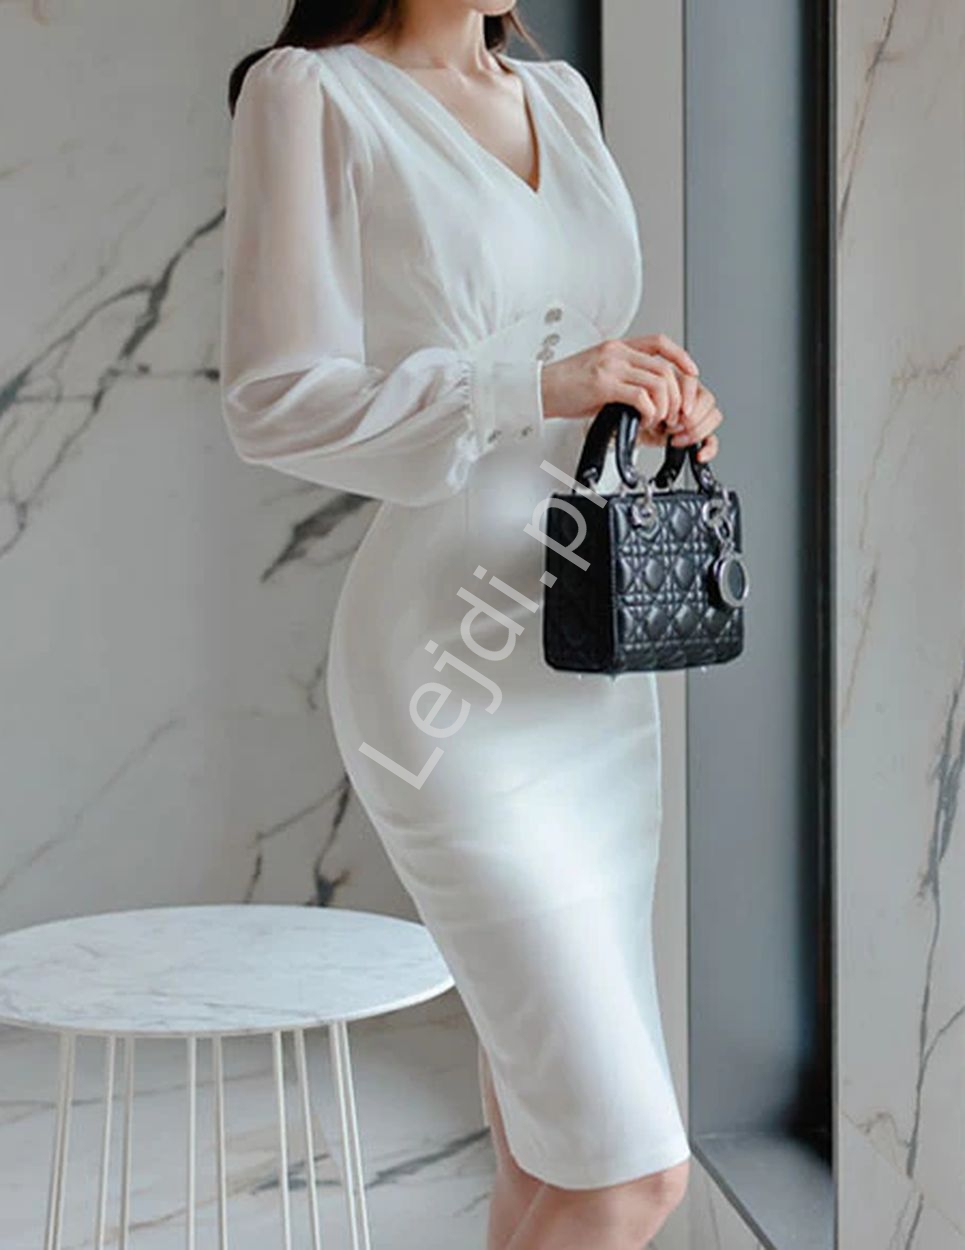 Biała sukienka elegancka z szyfonowym rękawem